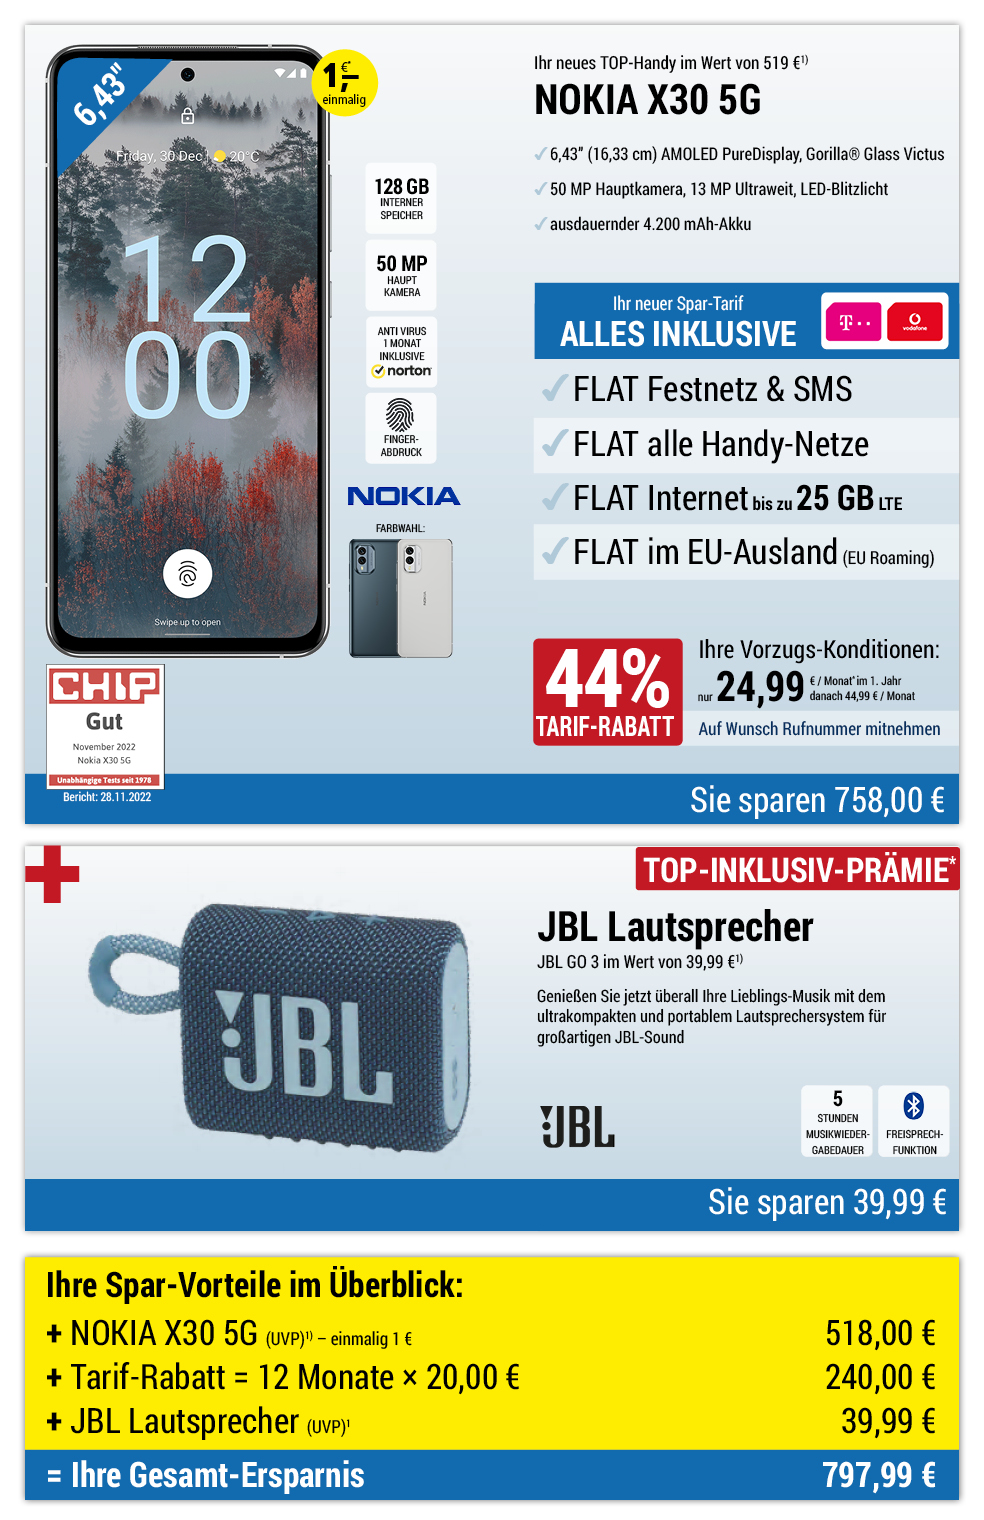 Für nur 1 €*: NOKIA X30 5G + JBL Lautsprecher mit ALL NET FLAT für 24,99 €/Monat im ersten Jahr